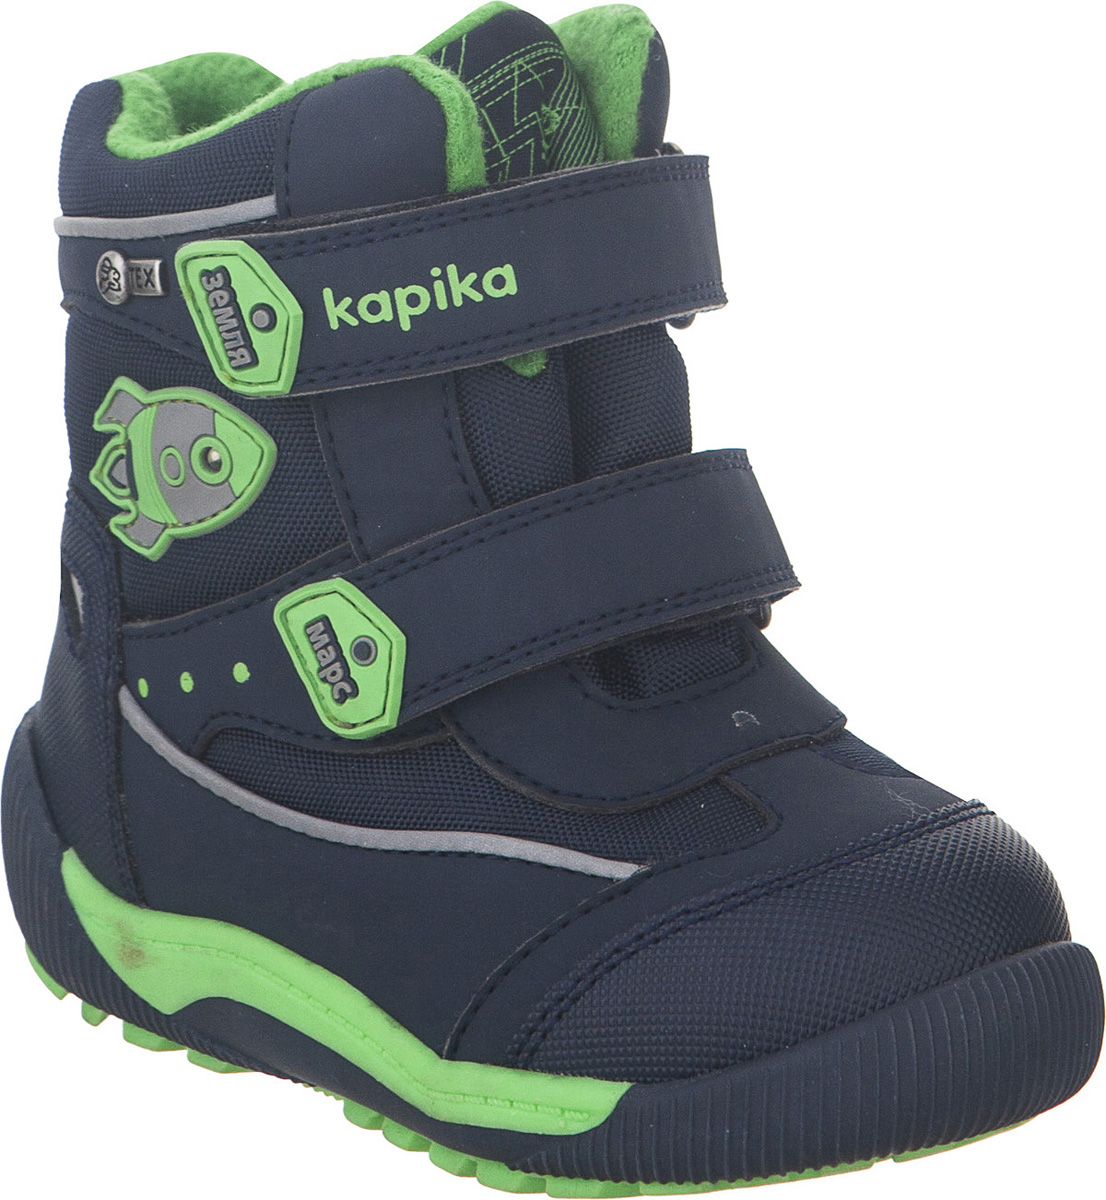 Ботинки для мальчика Kapika KapiTEX, цвет: темно-синий. 41207-2. Размер 25